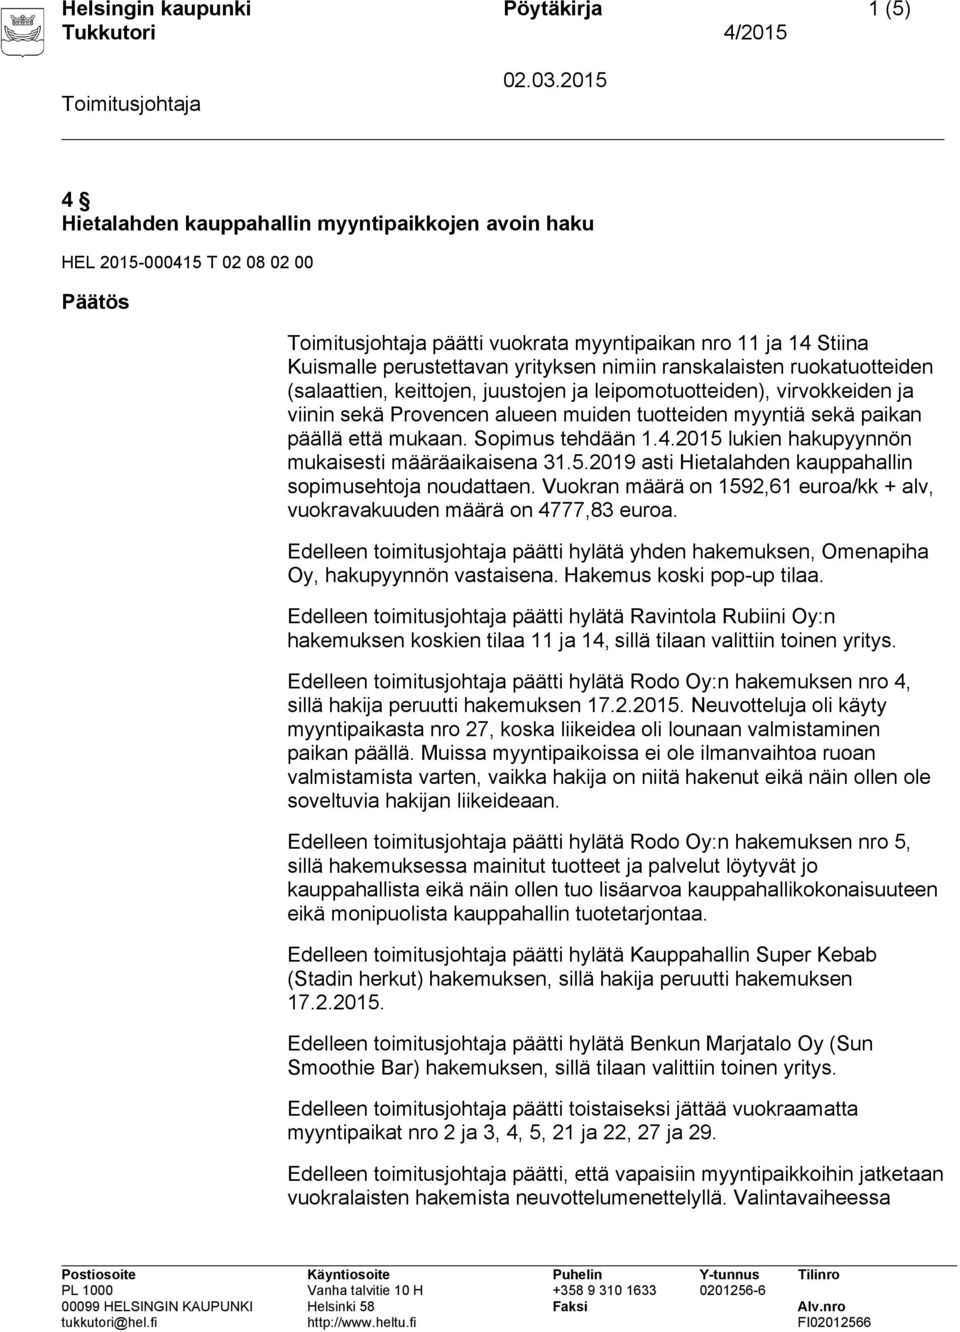 mukaan. Sopimus tehdään 1.4.2015 lukien hakupyynnön mukaisesti määräaikaisena 31.5.2019 asti Hietalahden kauppahallin sopimusehtoja noudattaen.